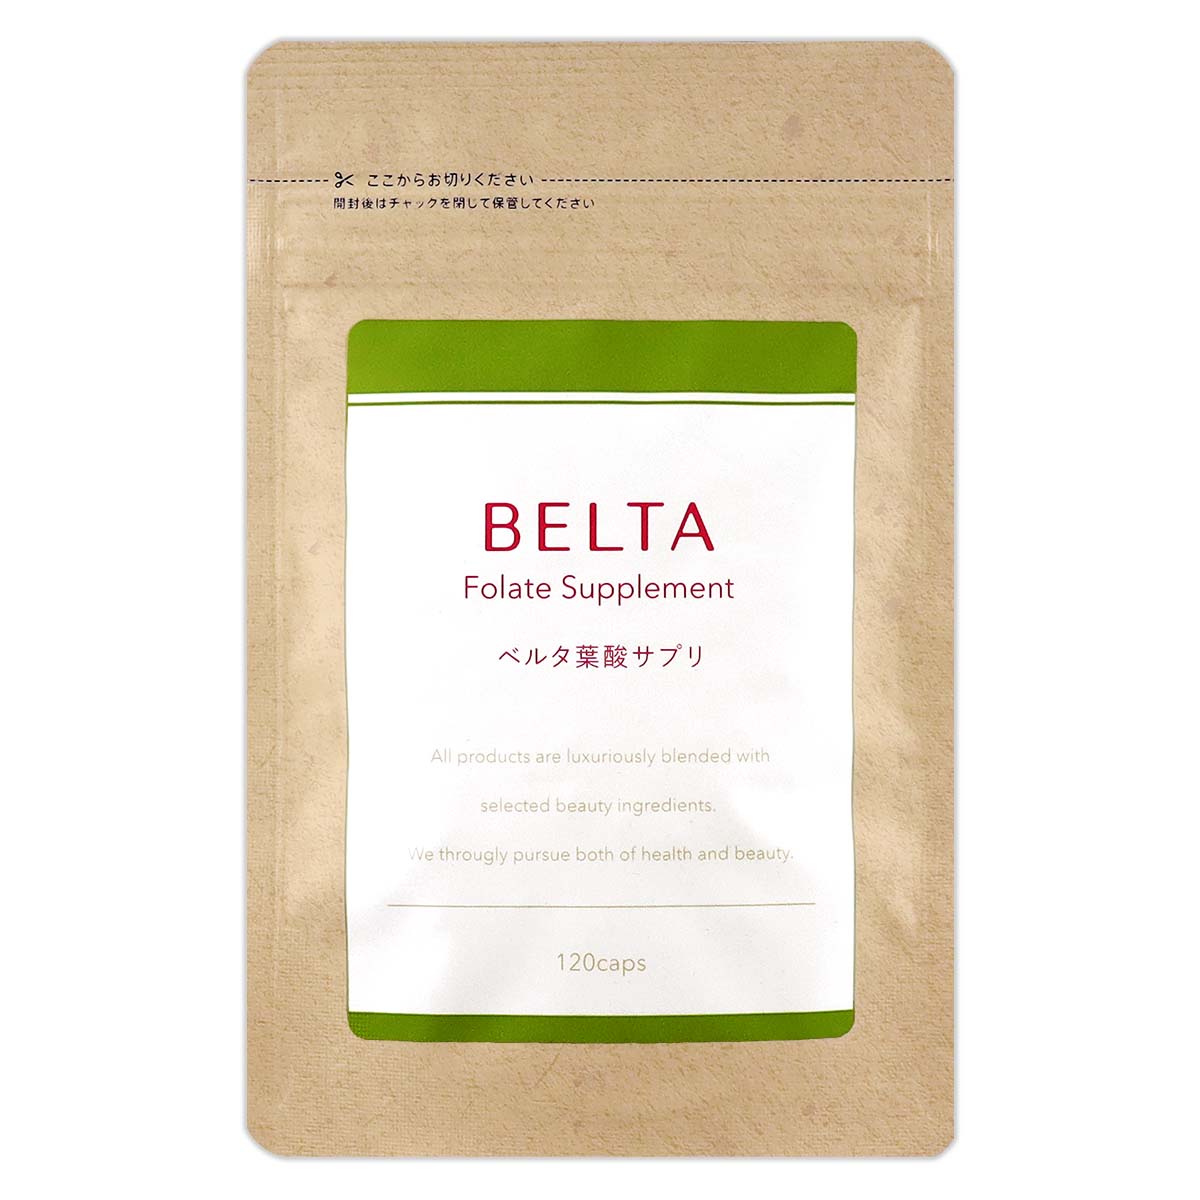 ベルタ葉酸サプリ 120粒 ( 約1ヵ月分 ) ベルタ BELTA 葉酸 妊婦 妊活